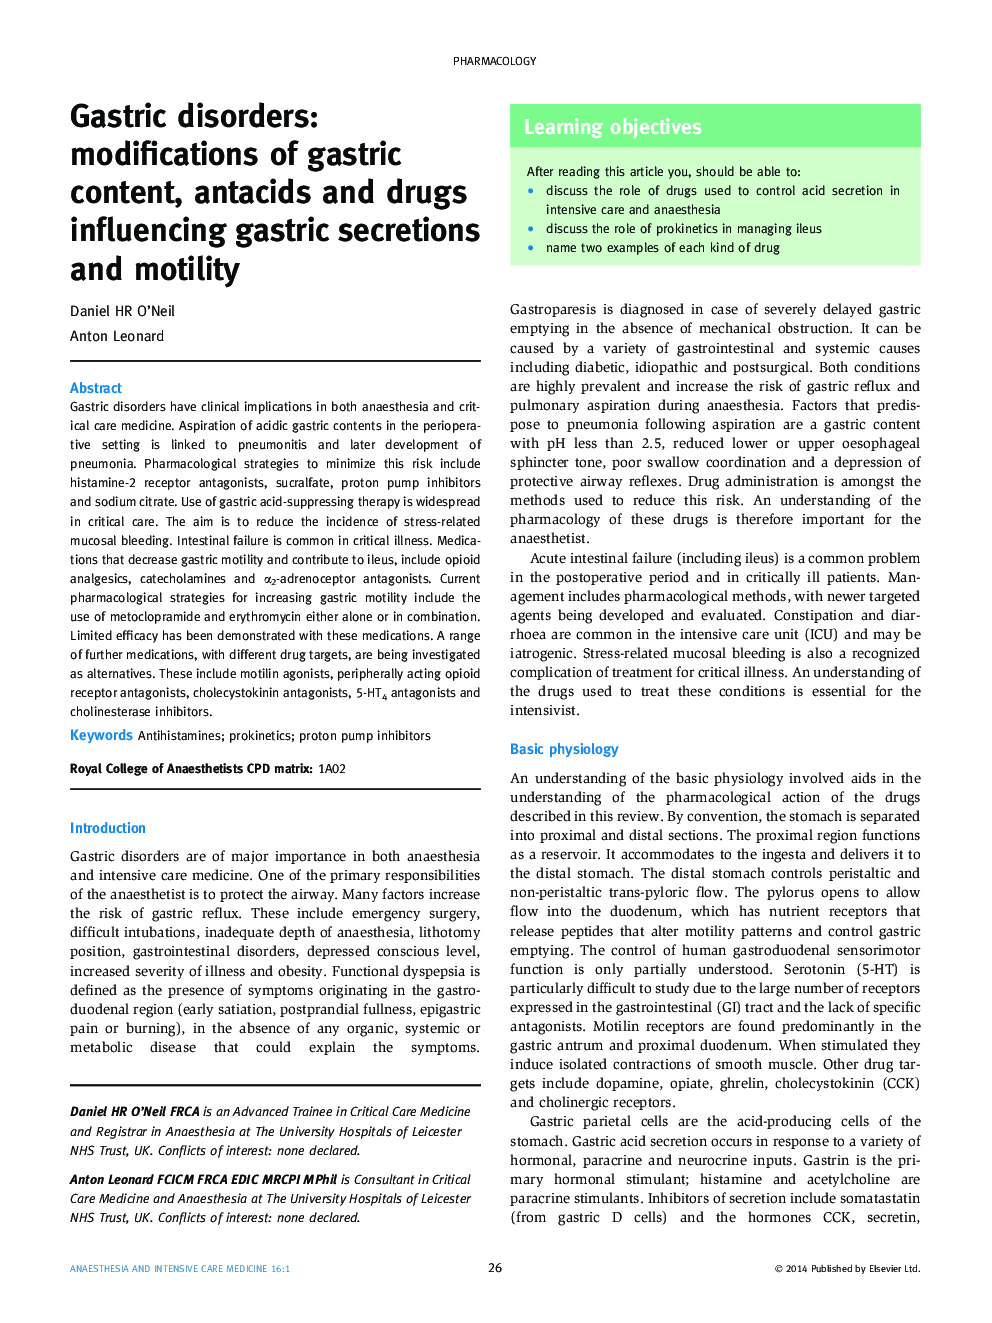 اختلالات معده: تغییرات معده، آنتی اسیدها و داروهای موثر بر ترشحات معده و حرکتی 